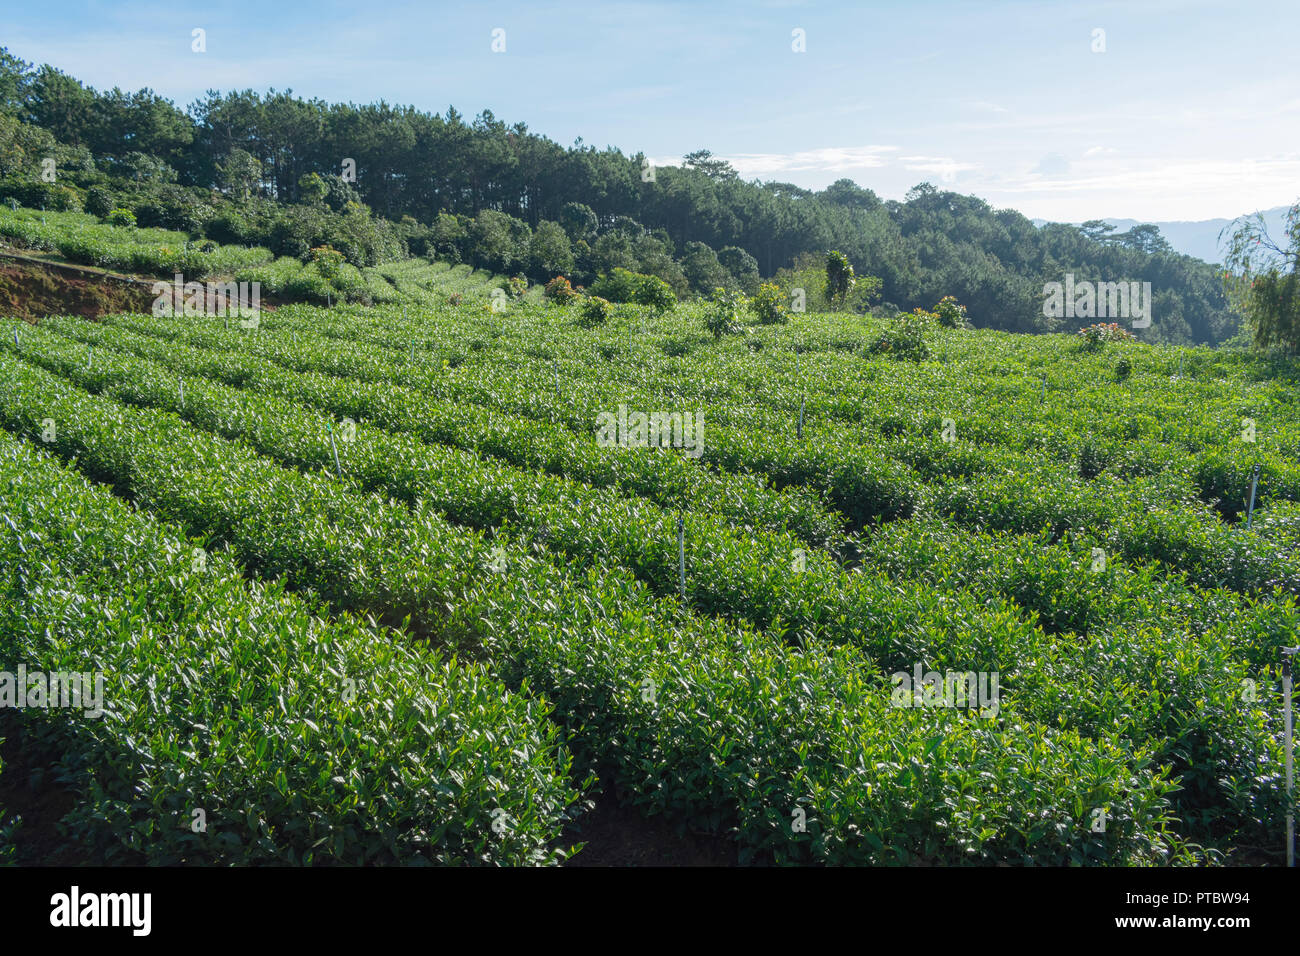 Contesto unico con fresche foglie di tè verde, tè hill, lonely tree e cielo blu. Immagine uso per la produzione di tè, pubblicità, design, marketing, pac Foto Stock